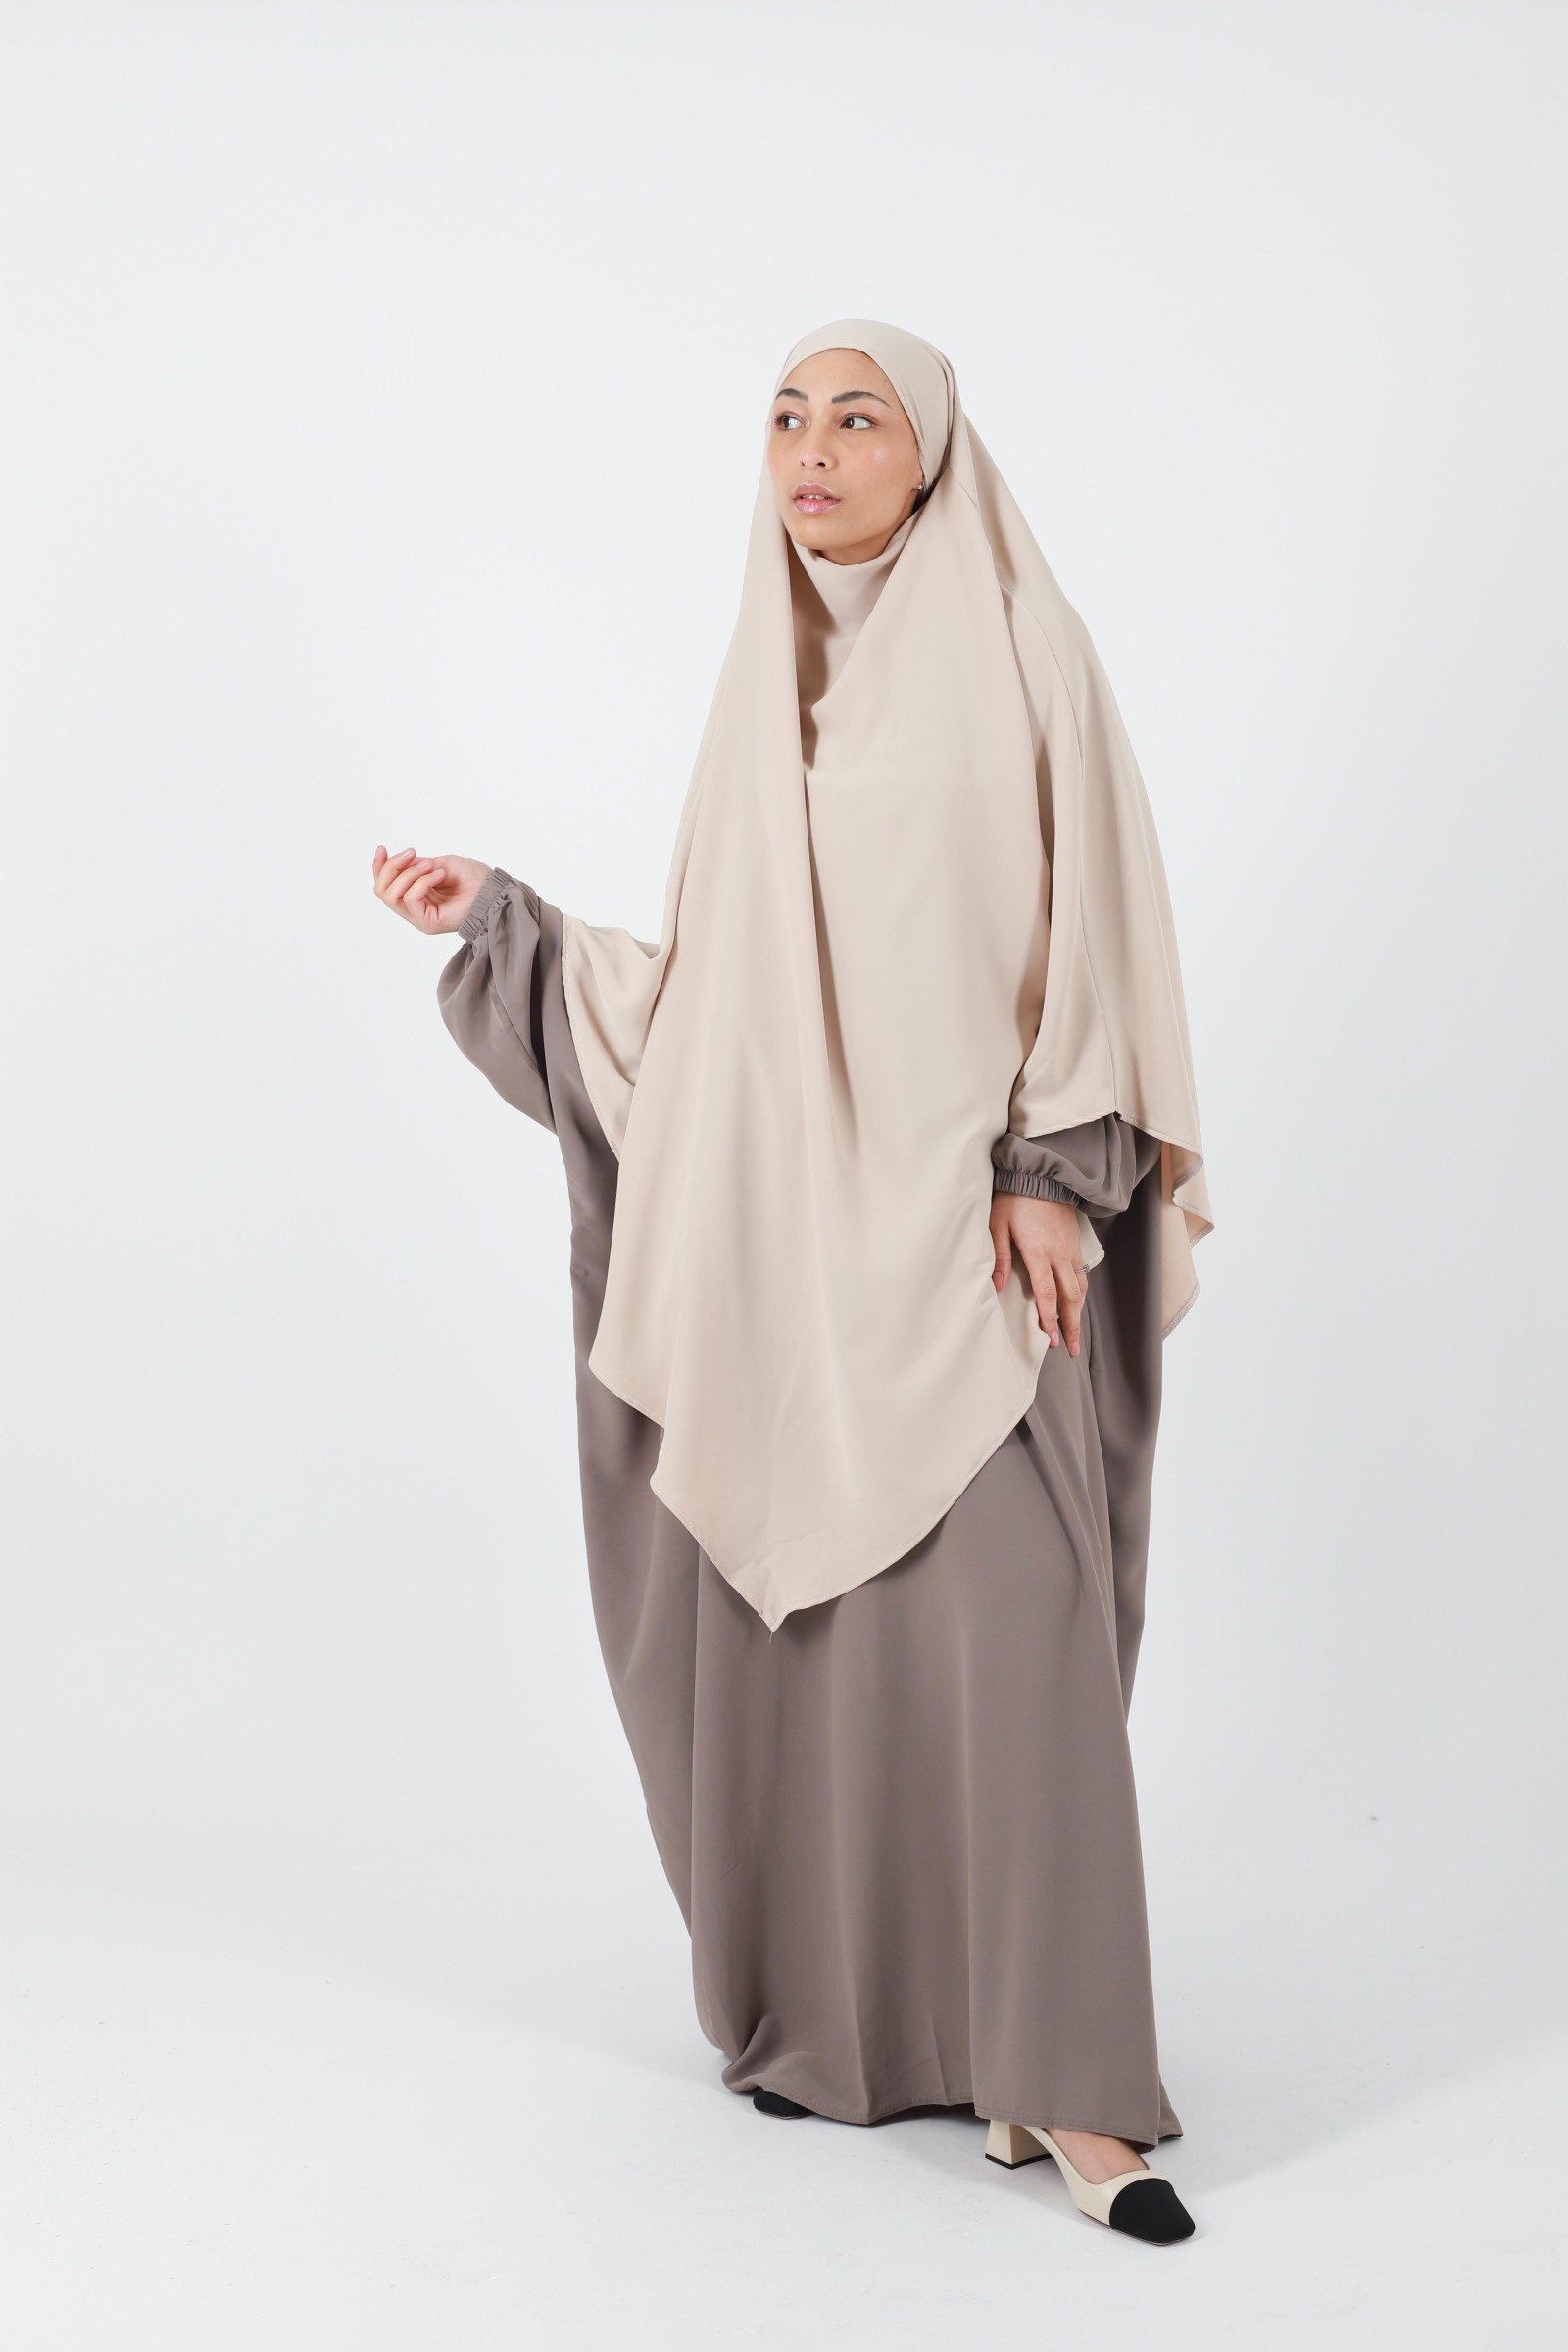 Khimar, a cheap Medina silk veil for Muslim women